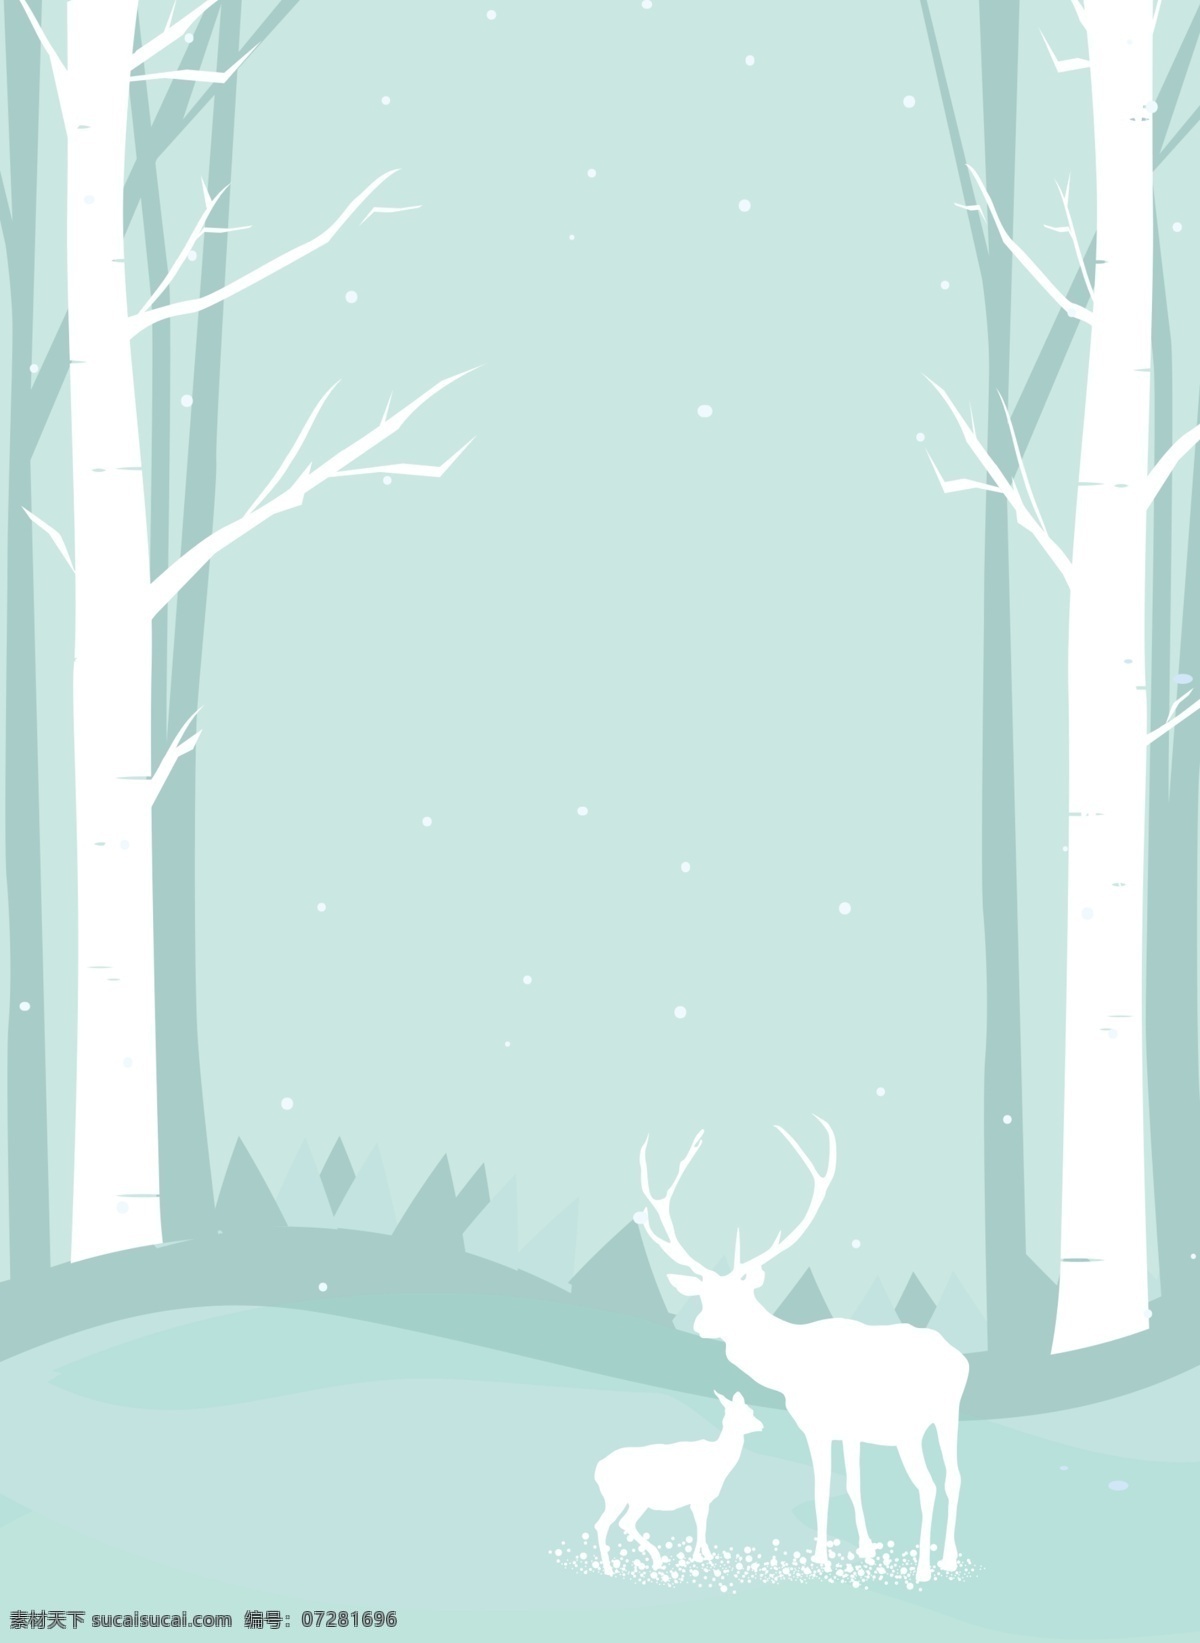 圣诞节 促销 圣诞树 宣传 背景 麋鹿 礼物 圣诞装饰 圣诞 圣诞节促销 雪地 树林背景 蓝色